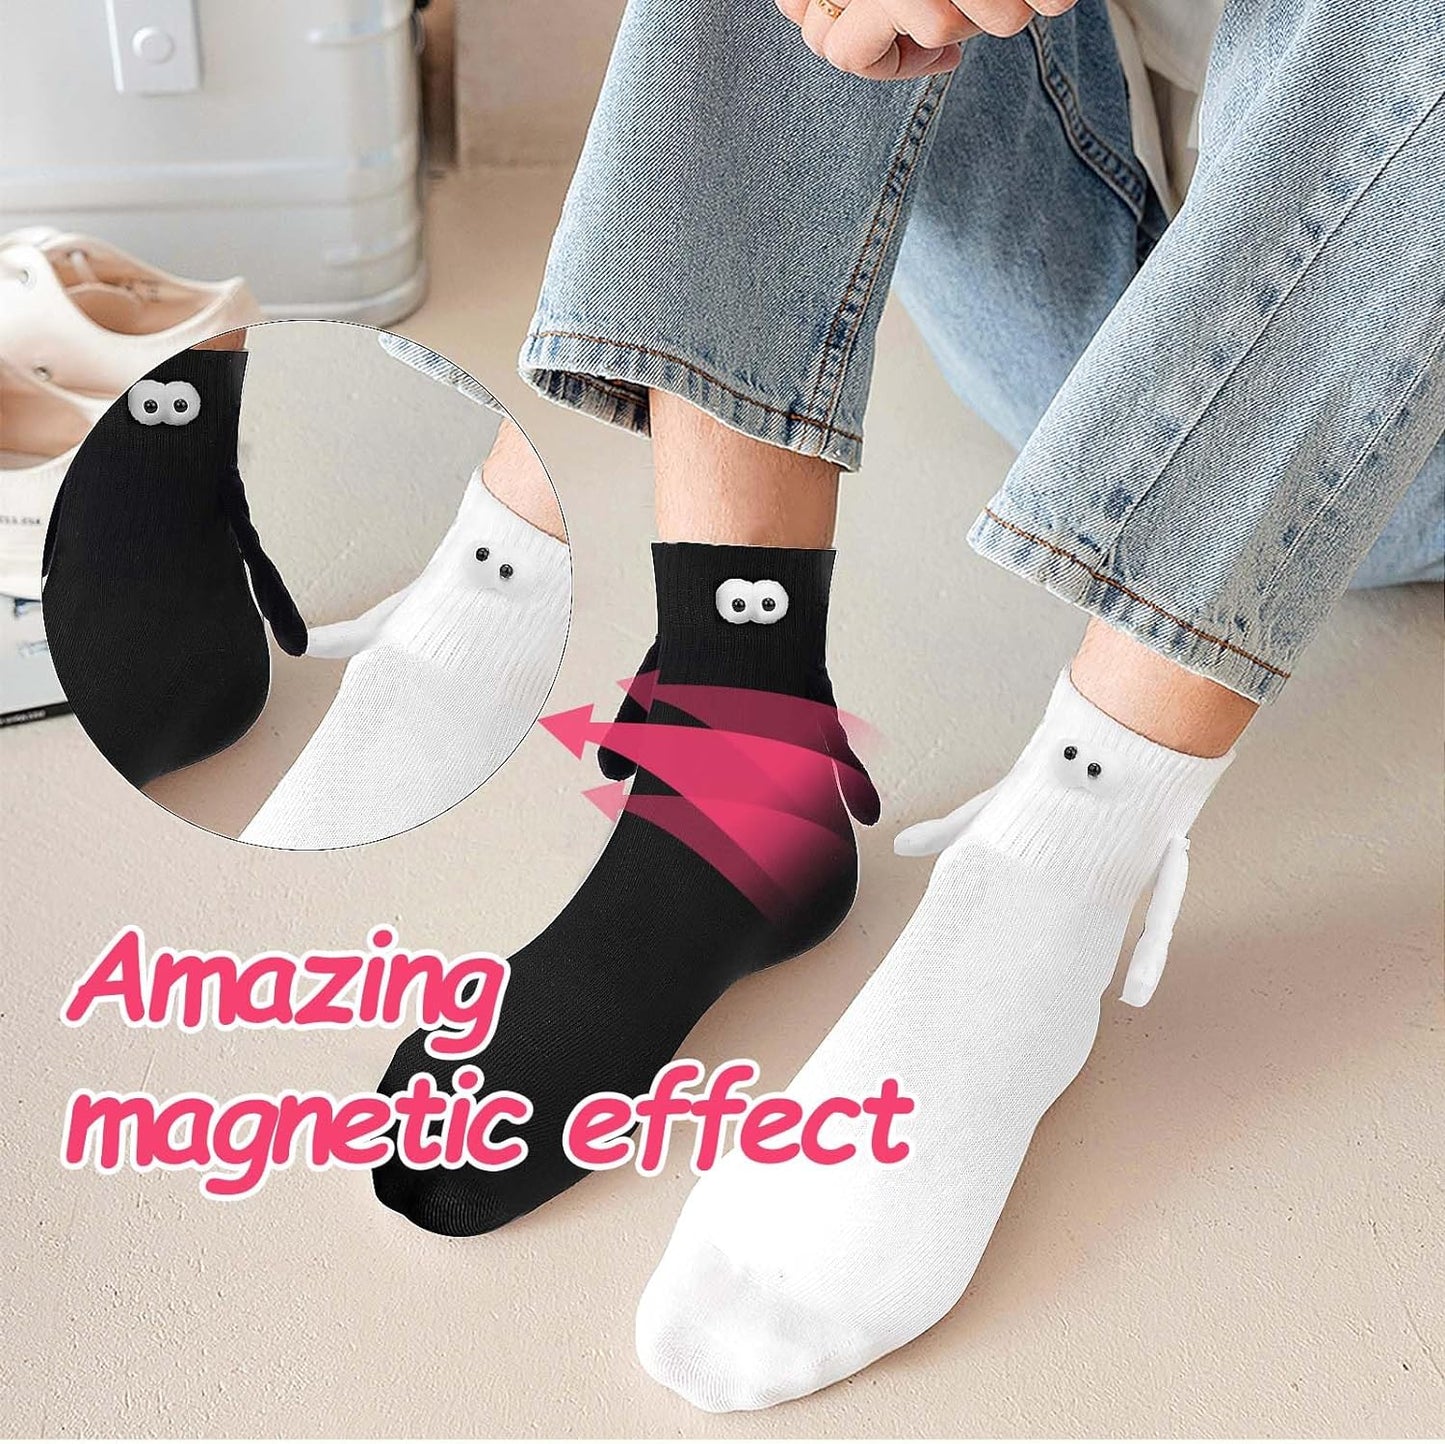 Magnetic Hand holding Socks